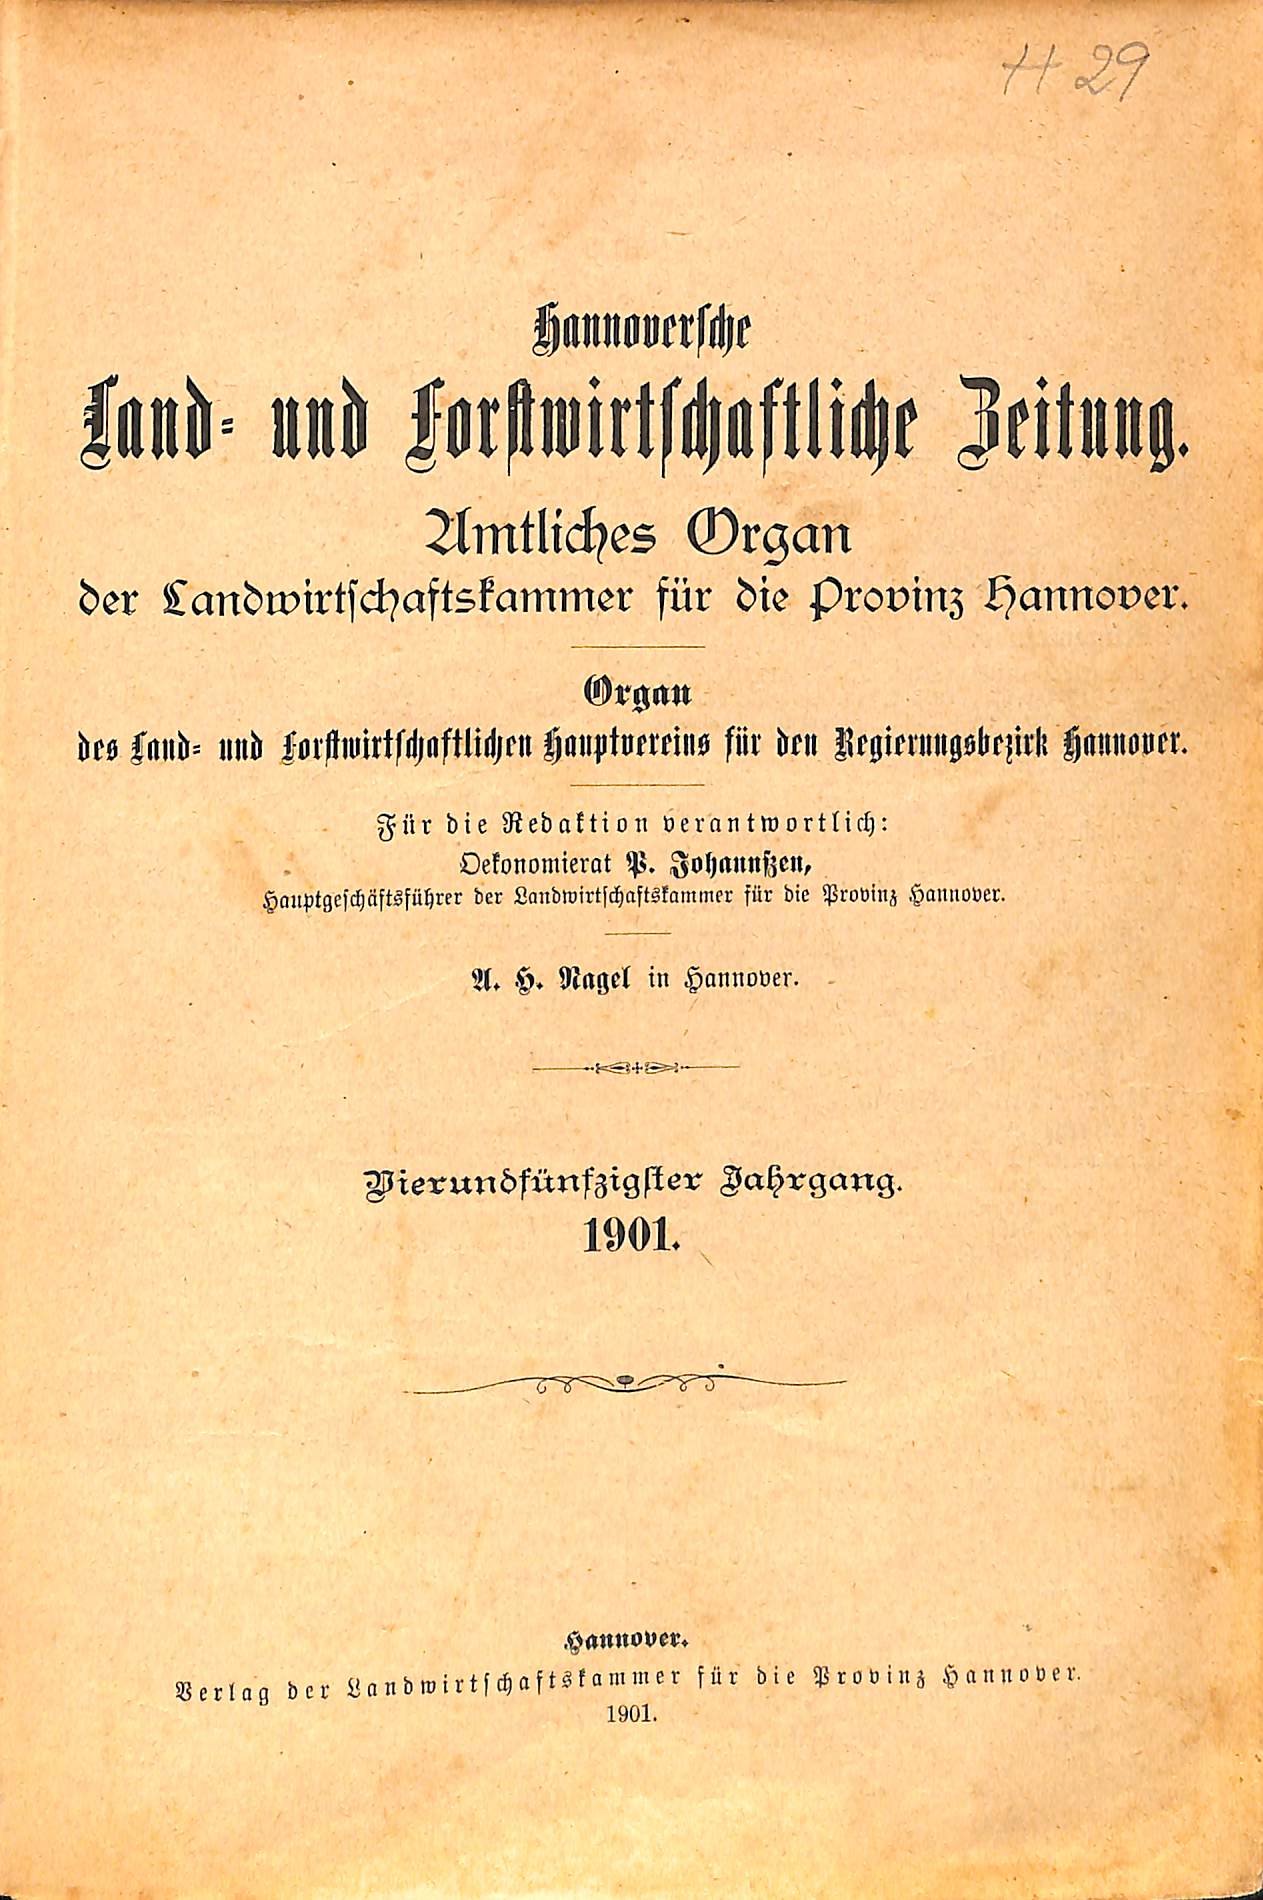 Hannoversche Land- und Forstwirtschaftliche Zeitung (Kreismuseum Syke CC BY-NC-SA)